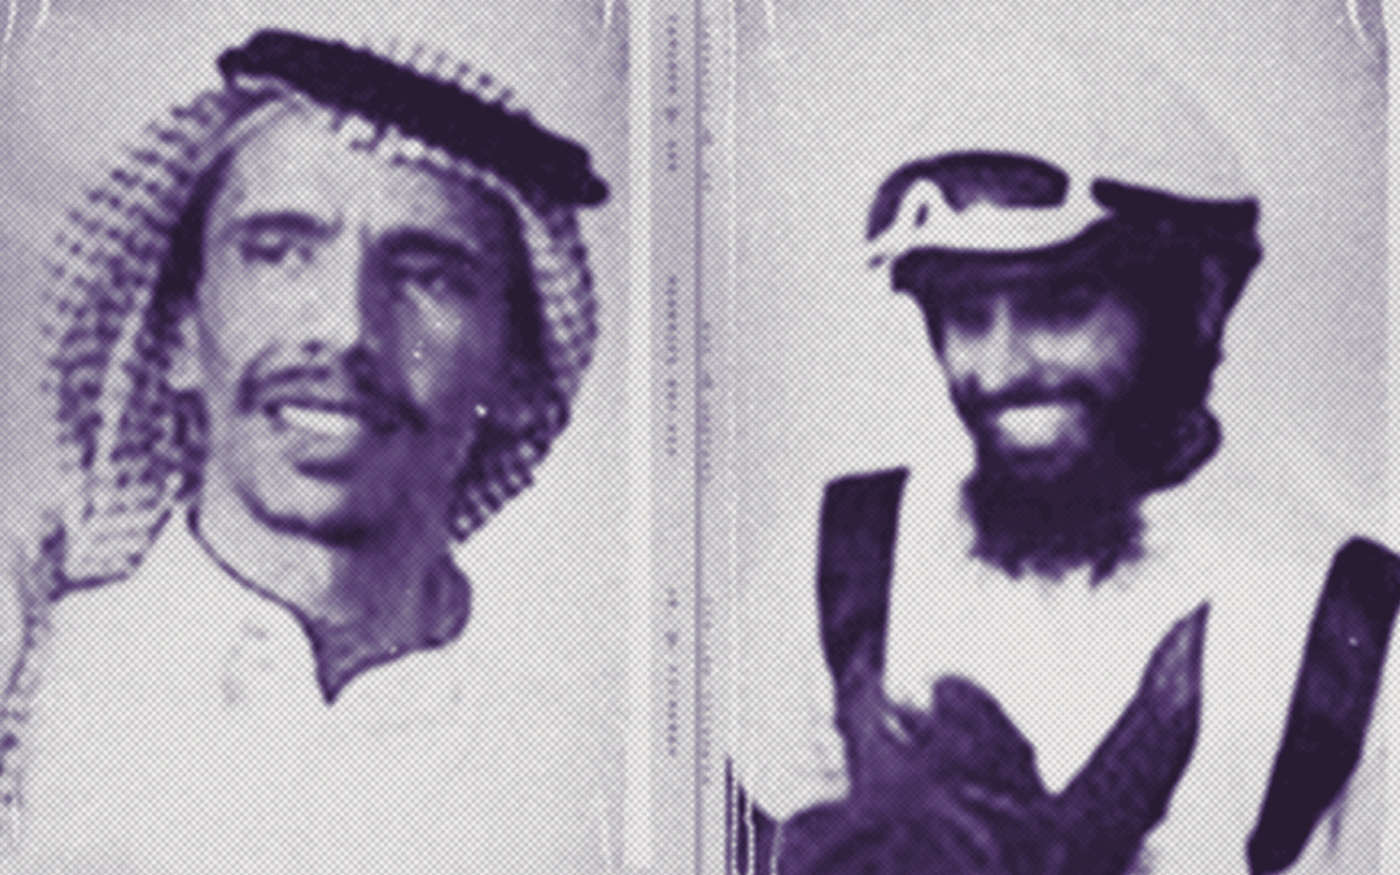 Abdullah Dukhail al-Howeiti (à gauche) et Abdulilah al-Howeiti (à droite) ont été condamnés en 2022 à 50 ans de prison assortis de 50 ans d’interdiction de voyager (Twitter/Alqst)